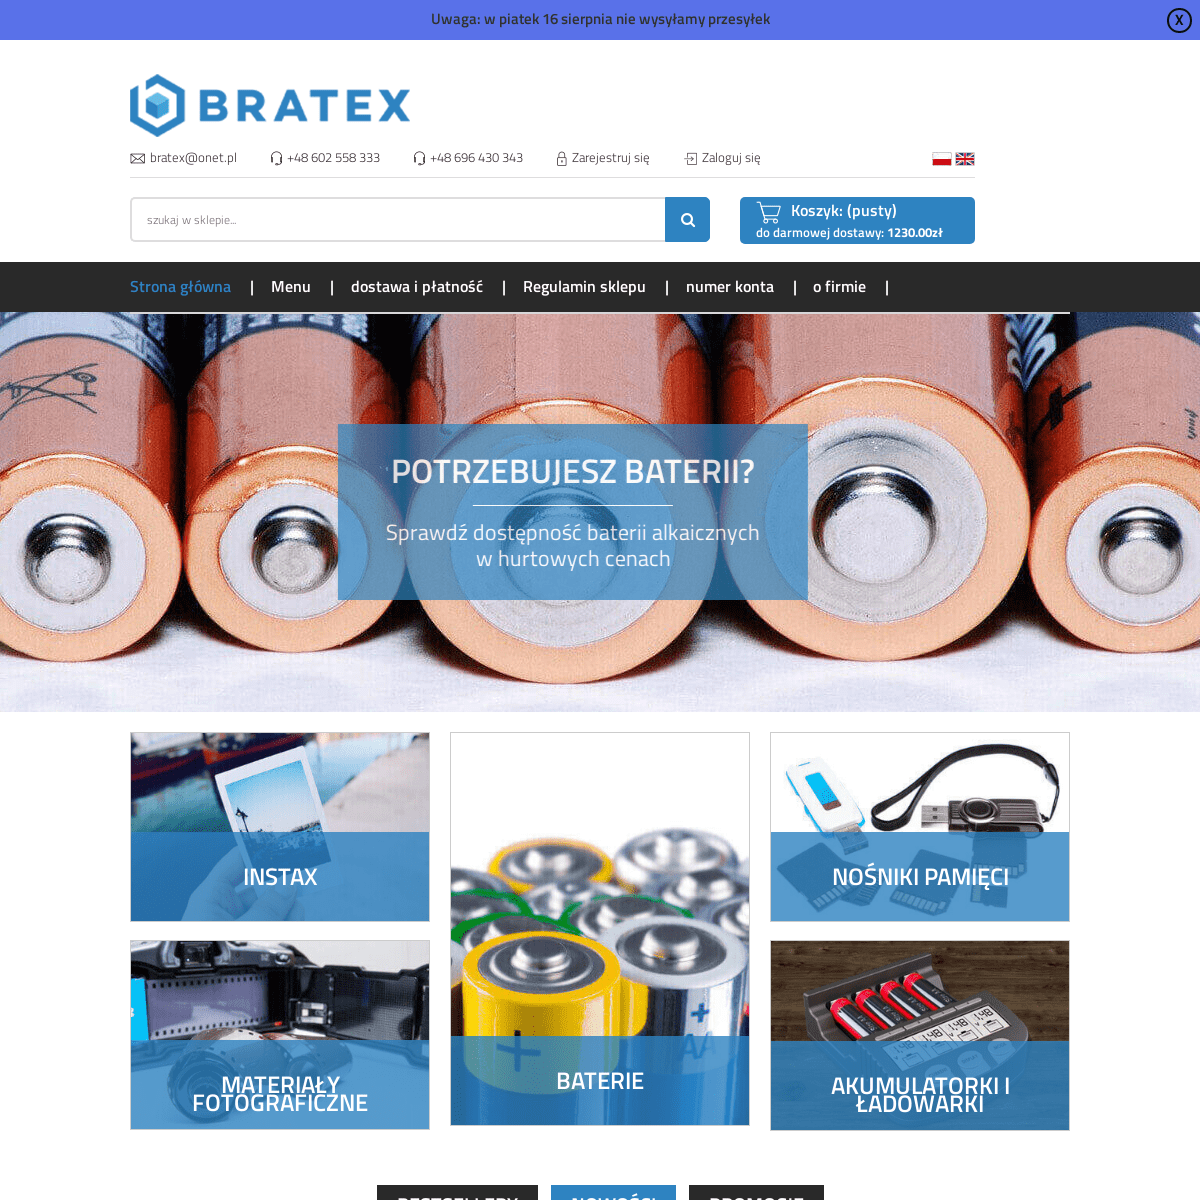 Bratex - internetowy sklep fotograficzny, hurtownia fotograficzna